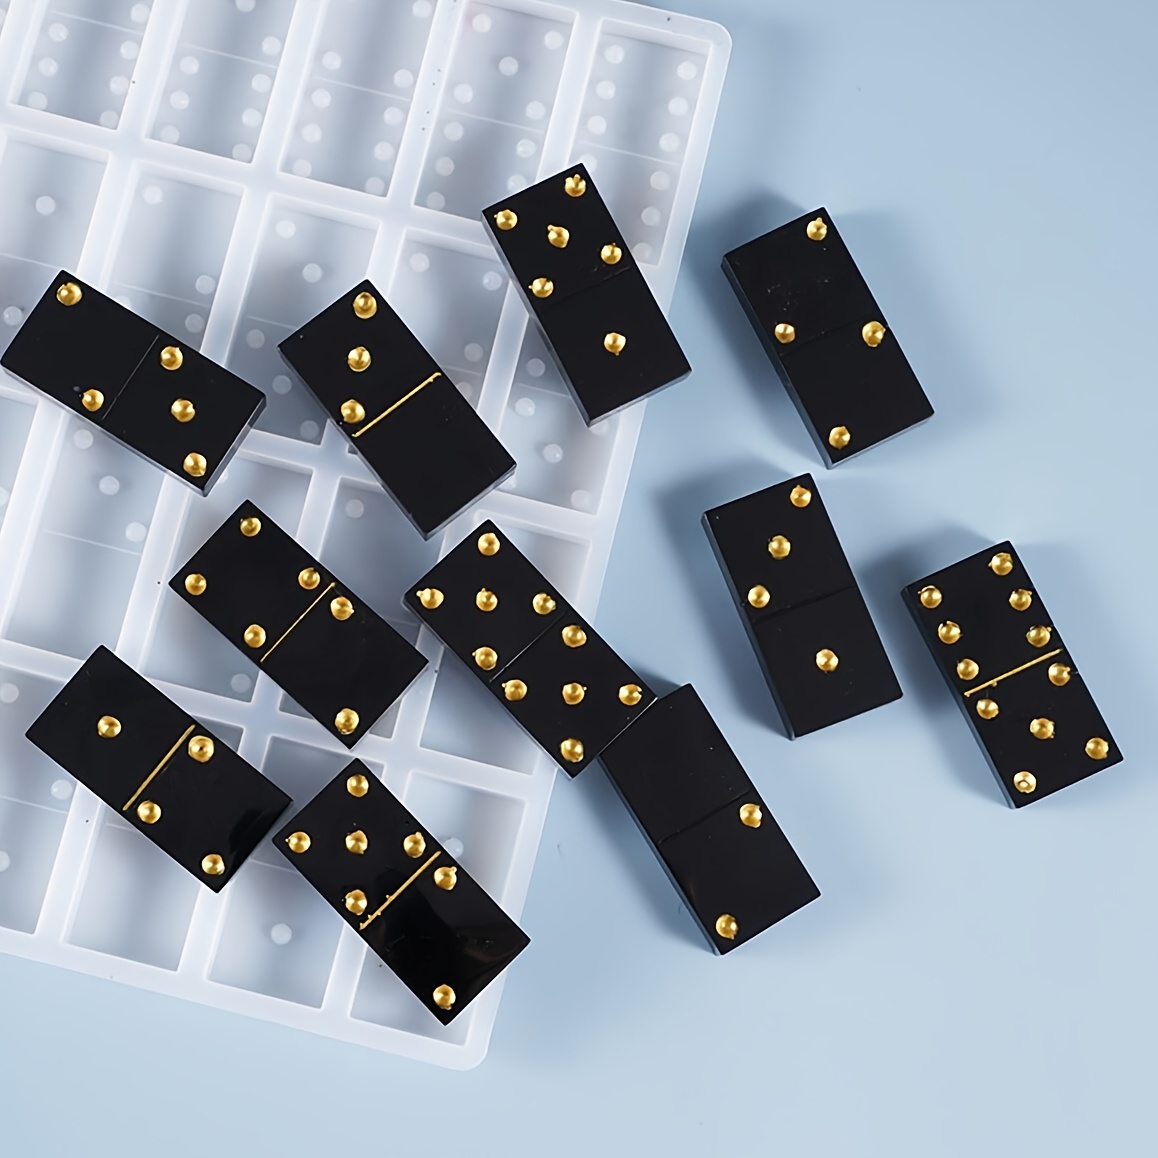 Heart Domino Silicone mold